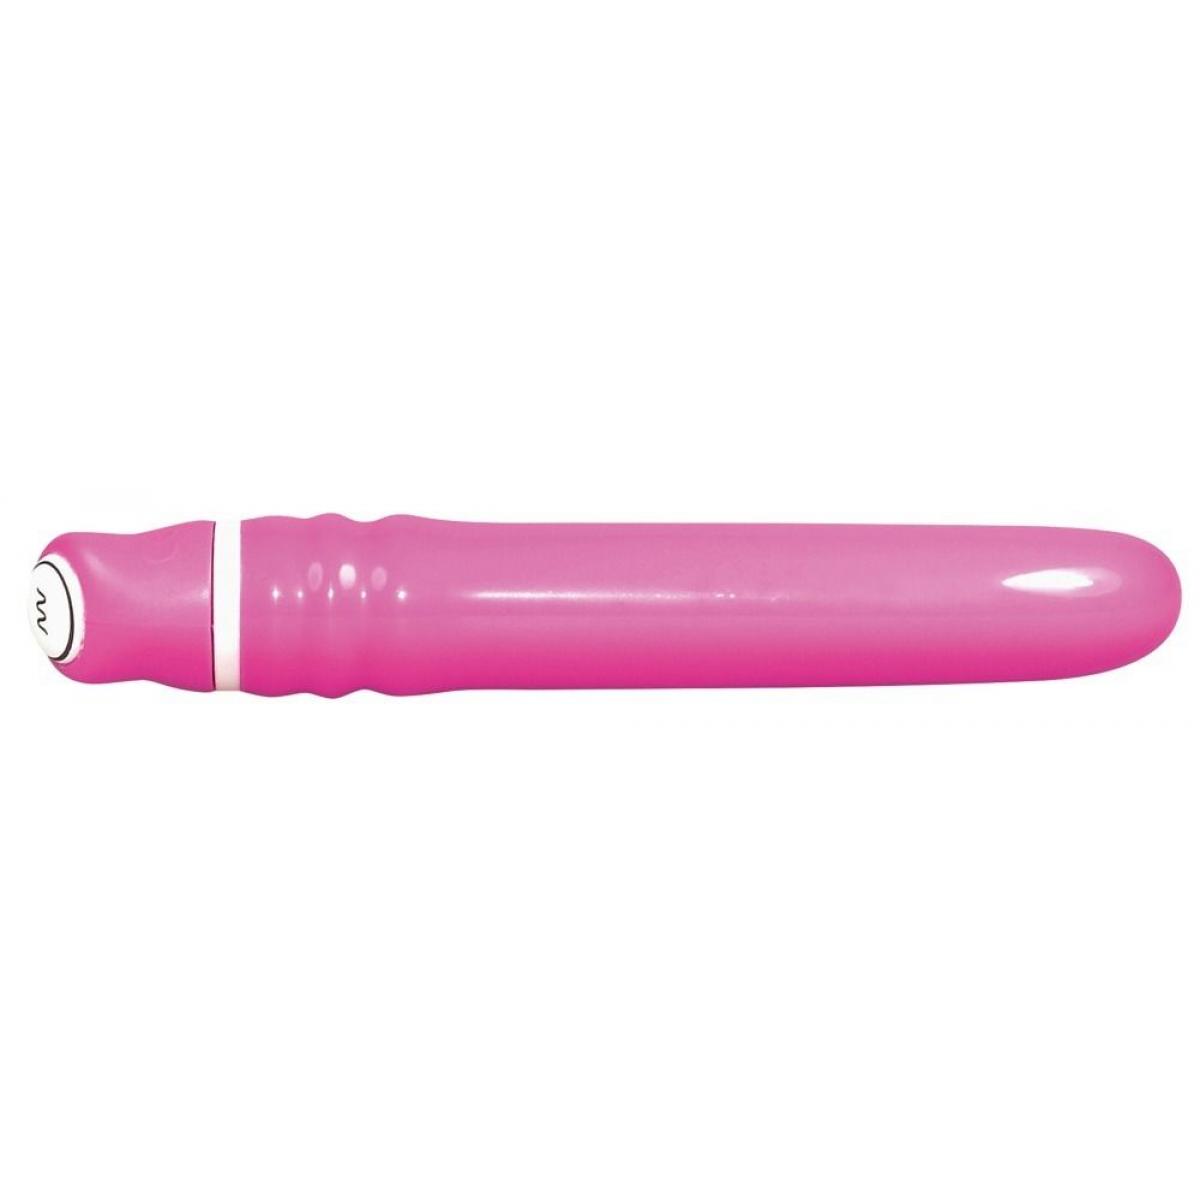 Розовый набор секс-игрушек